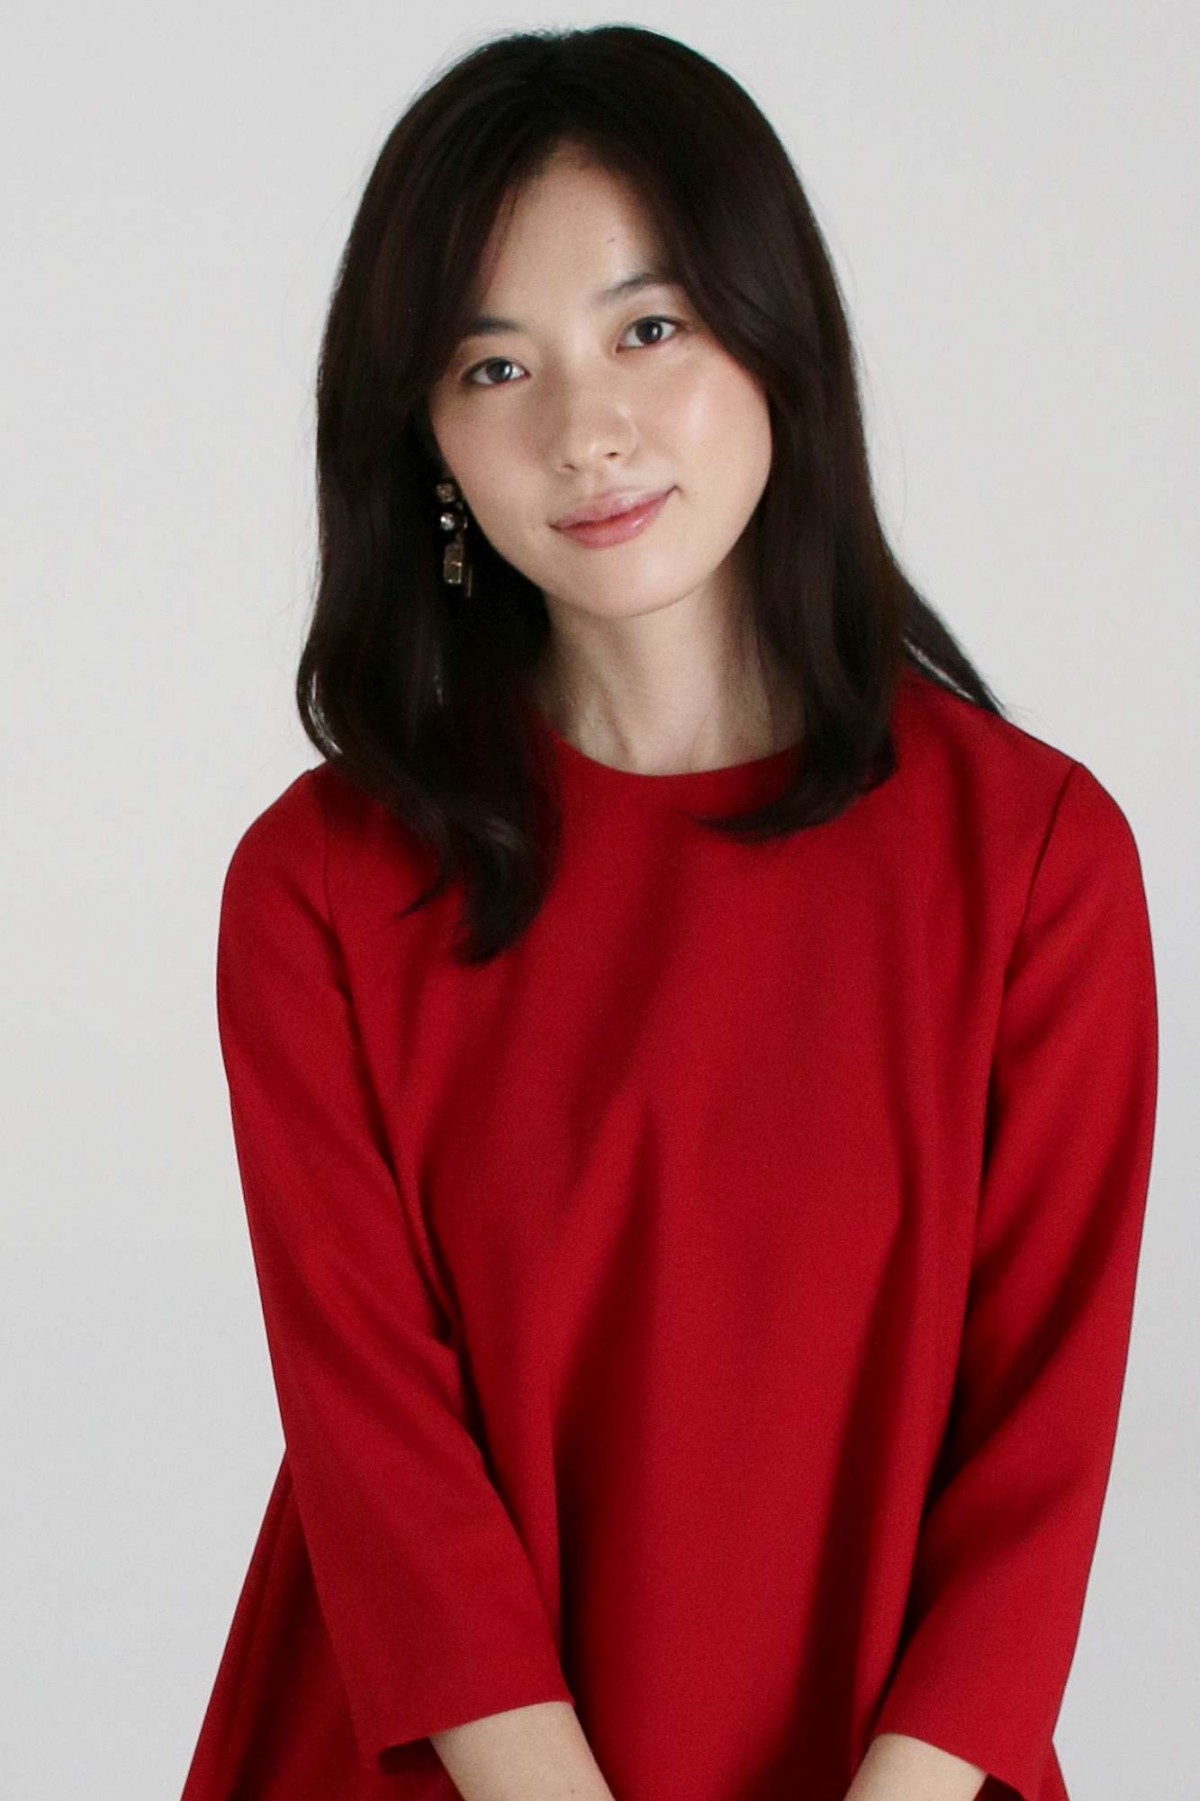 韓国の人気女優ハン・ヒョジュ、相葉雅紀は「真面目で優しい」とファン対応を絶賛